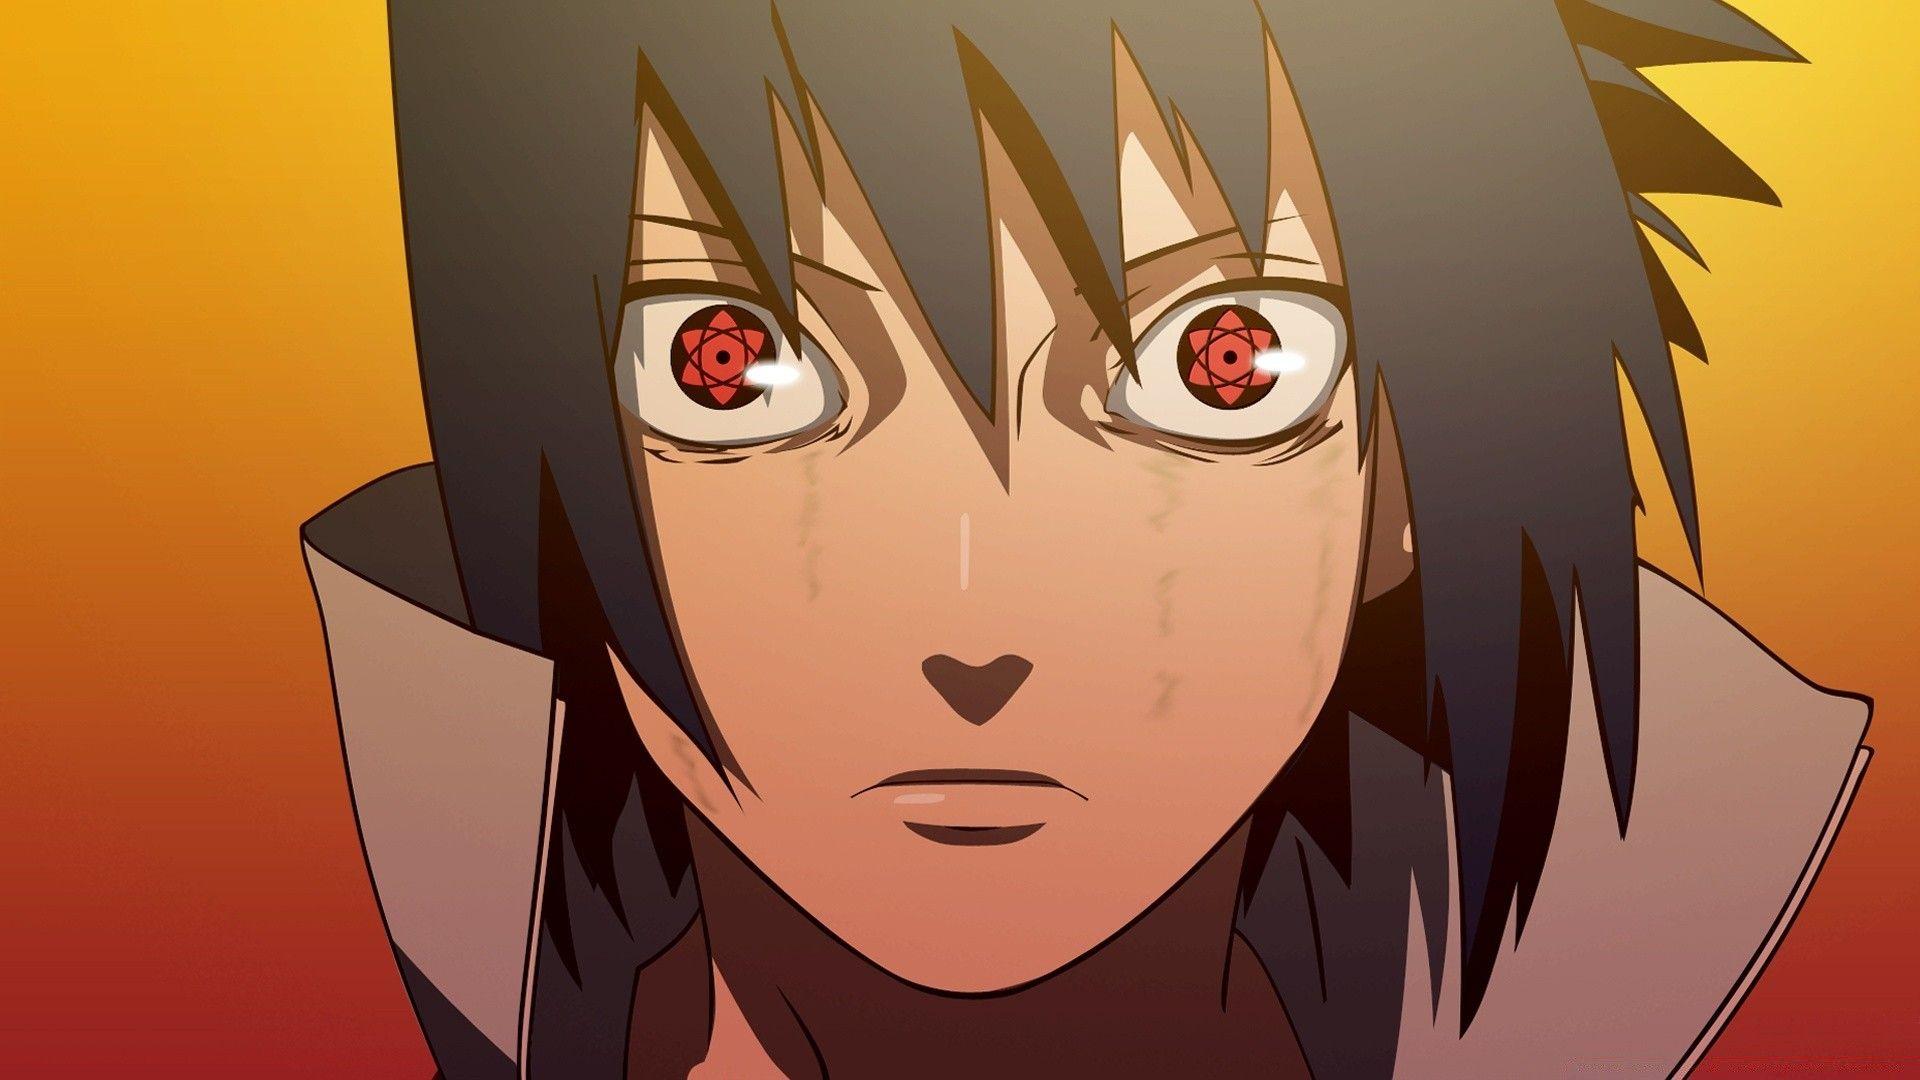 Bạn là fan của Naruto? Nếu phải thì bạn không thể bỏ qua ảnh Uchiha Sasuke - một trong những nhân vật quan trọng nhất trong câu chuyện. Hãy ngắm nhìn những hình ảnh đầy uy lực của anh ta và khám phá thêm về Sasuke.